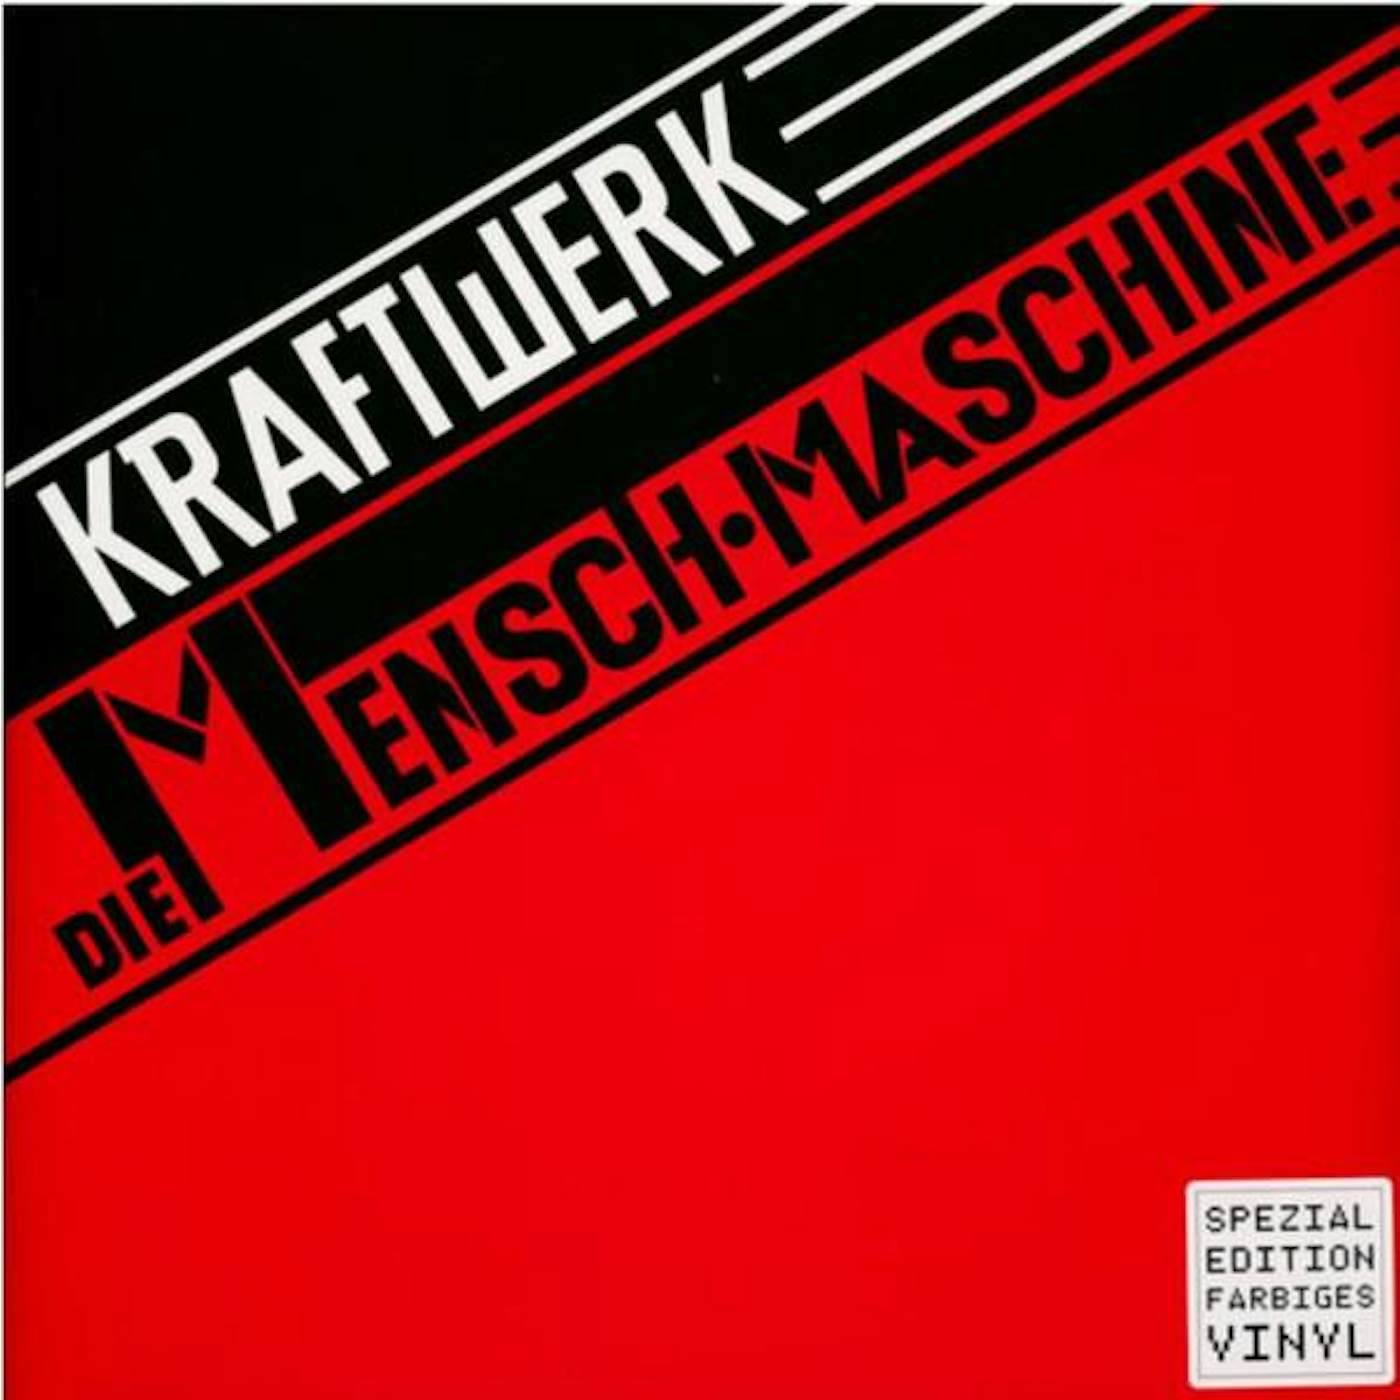 Unknown DIE MENSCH MASCHINE GERMAN VERSION Vinyl Record